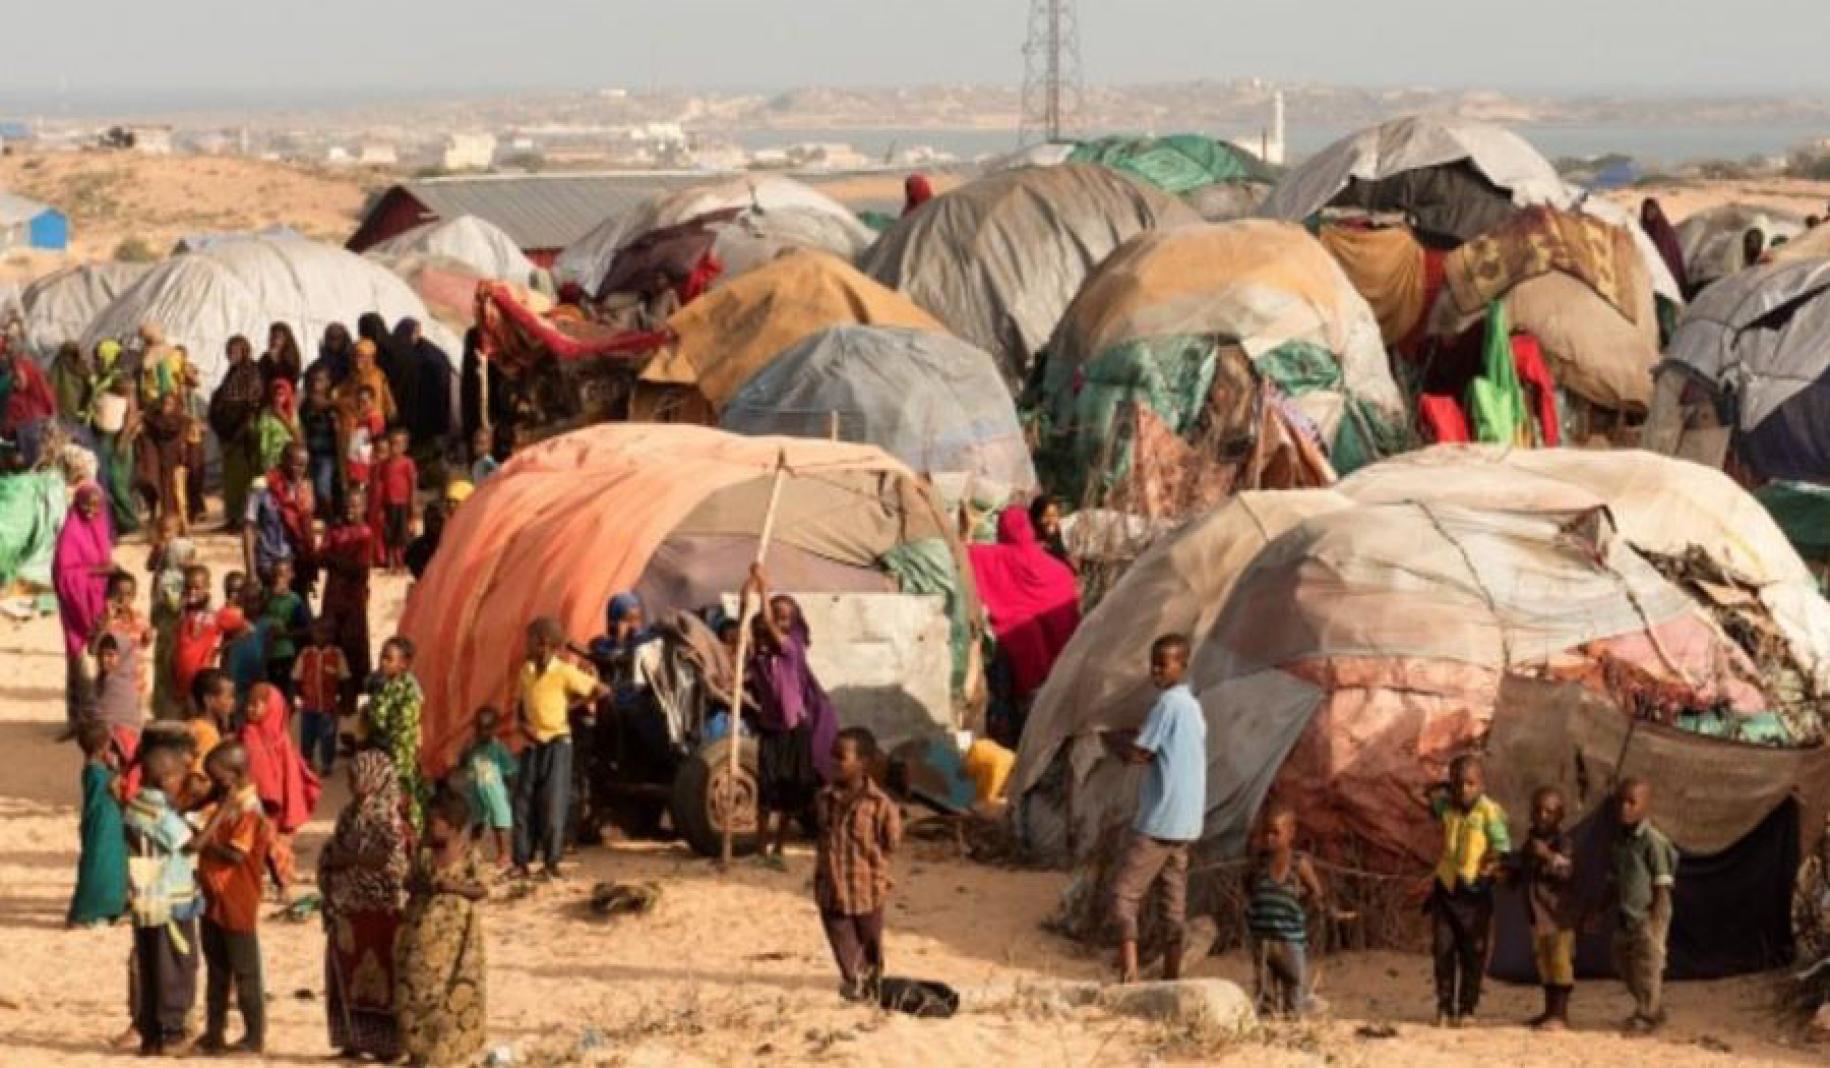 Vue panoramique d'un camp de personnes déplacées. On y voit de nombreuses tentes et de nombreuses personnes, hommes, femmes et enfants.